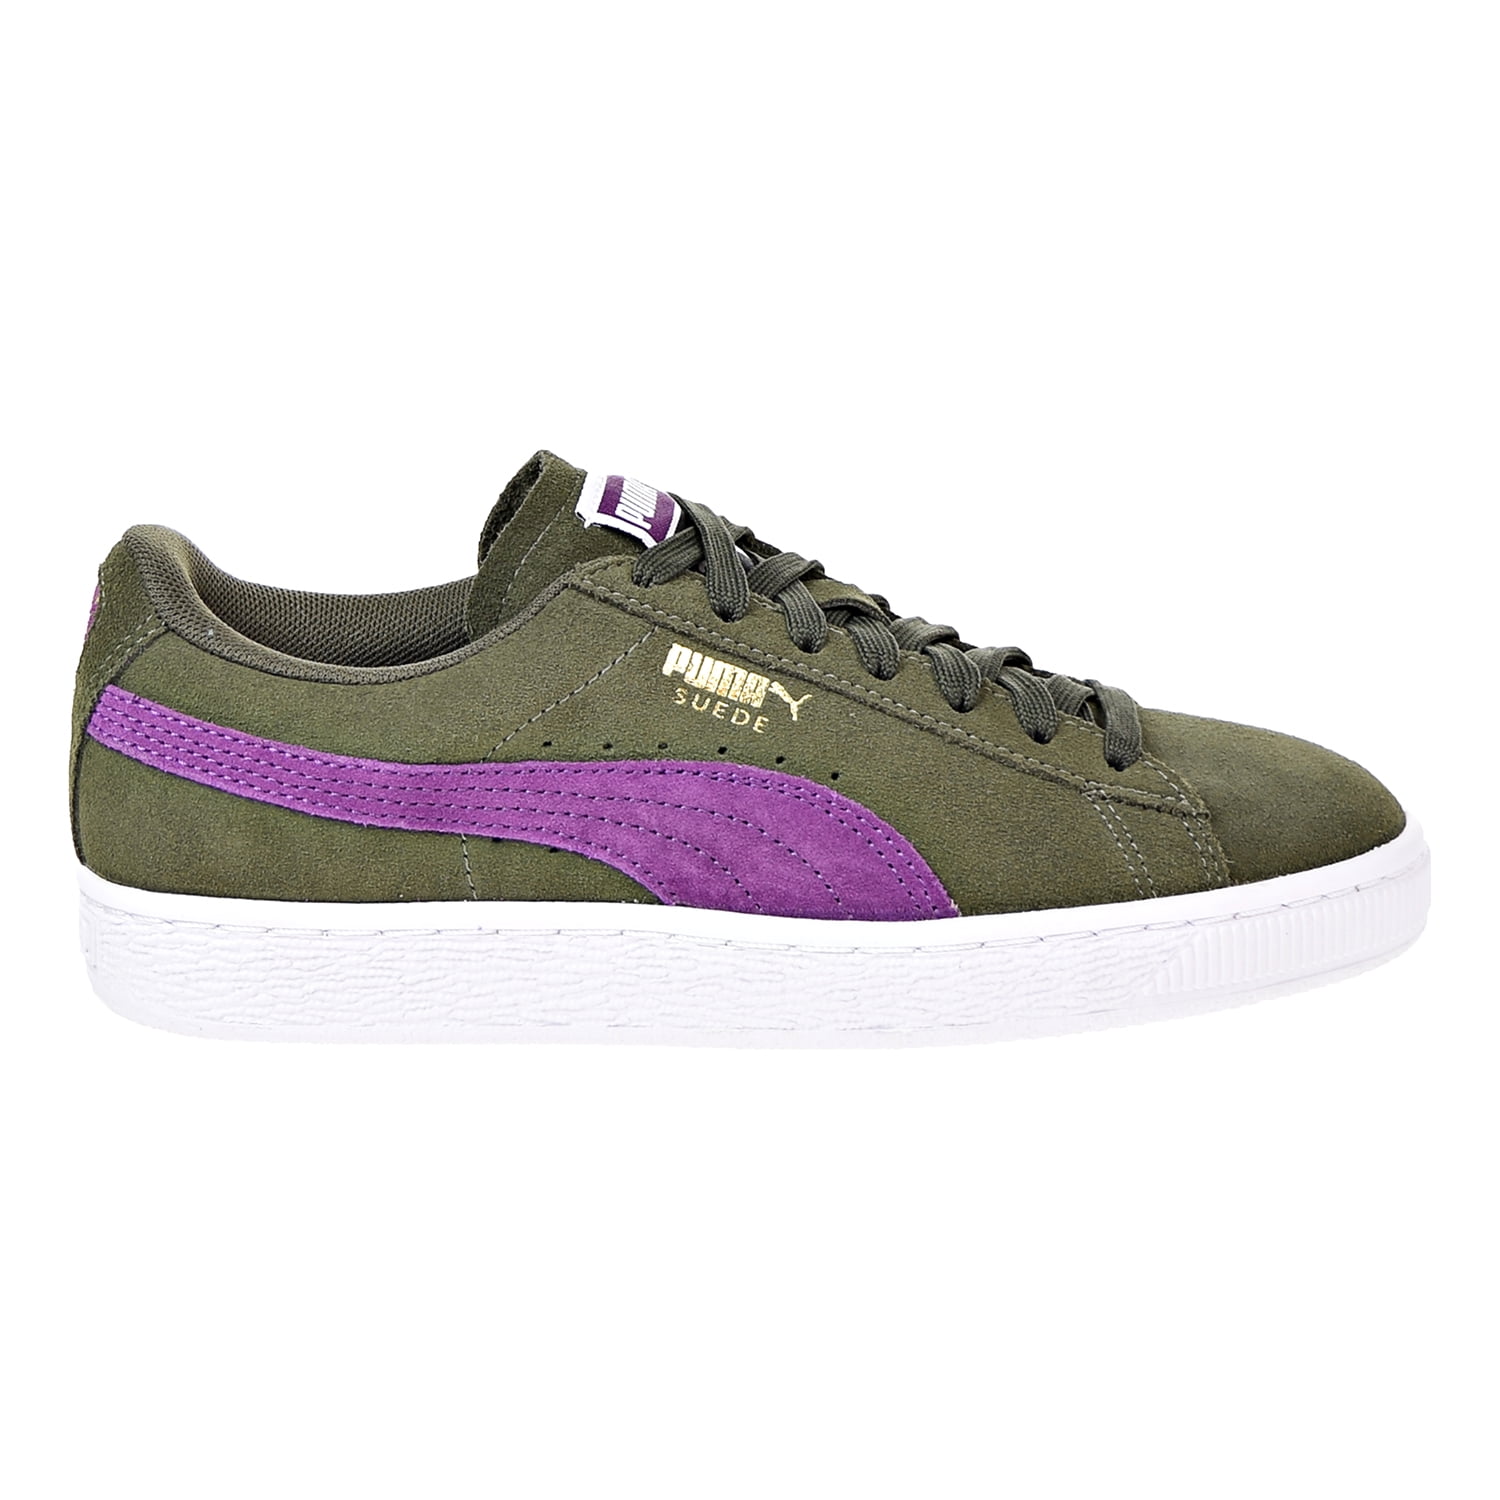 Veroveraar geef de bloem water kromme Puma Suede Classic Womens Shoes Olive Night/Dark Purple 355462-55 -  Walmart.com